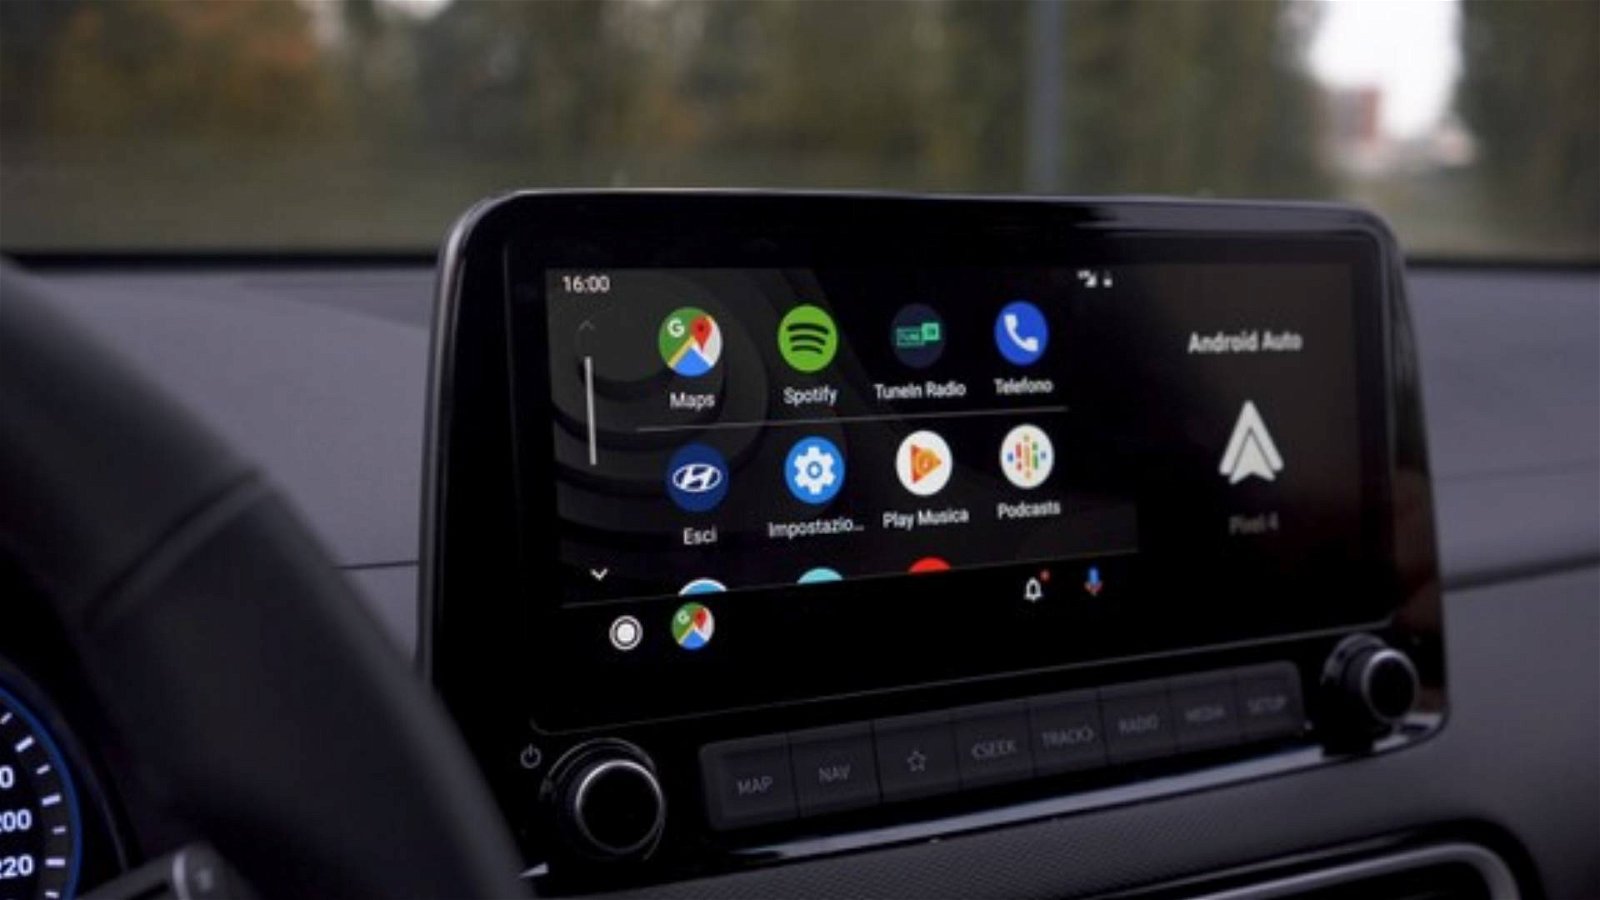 Immagine di Android Auto, nuova interfaccia a partire dal 16 dicembre